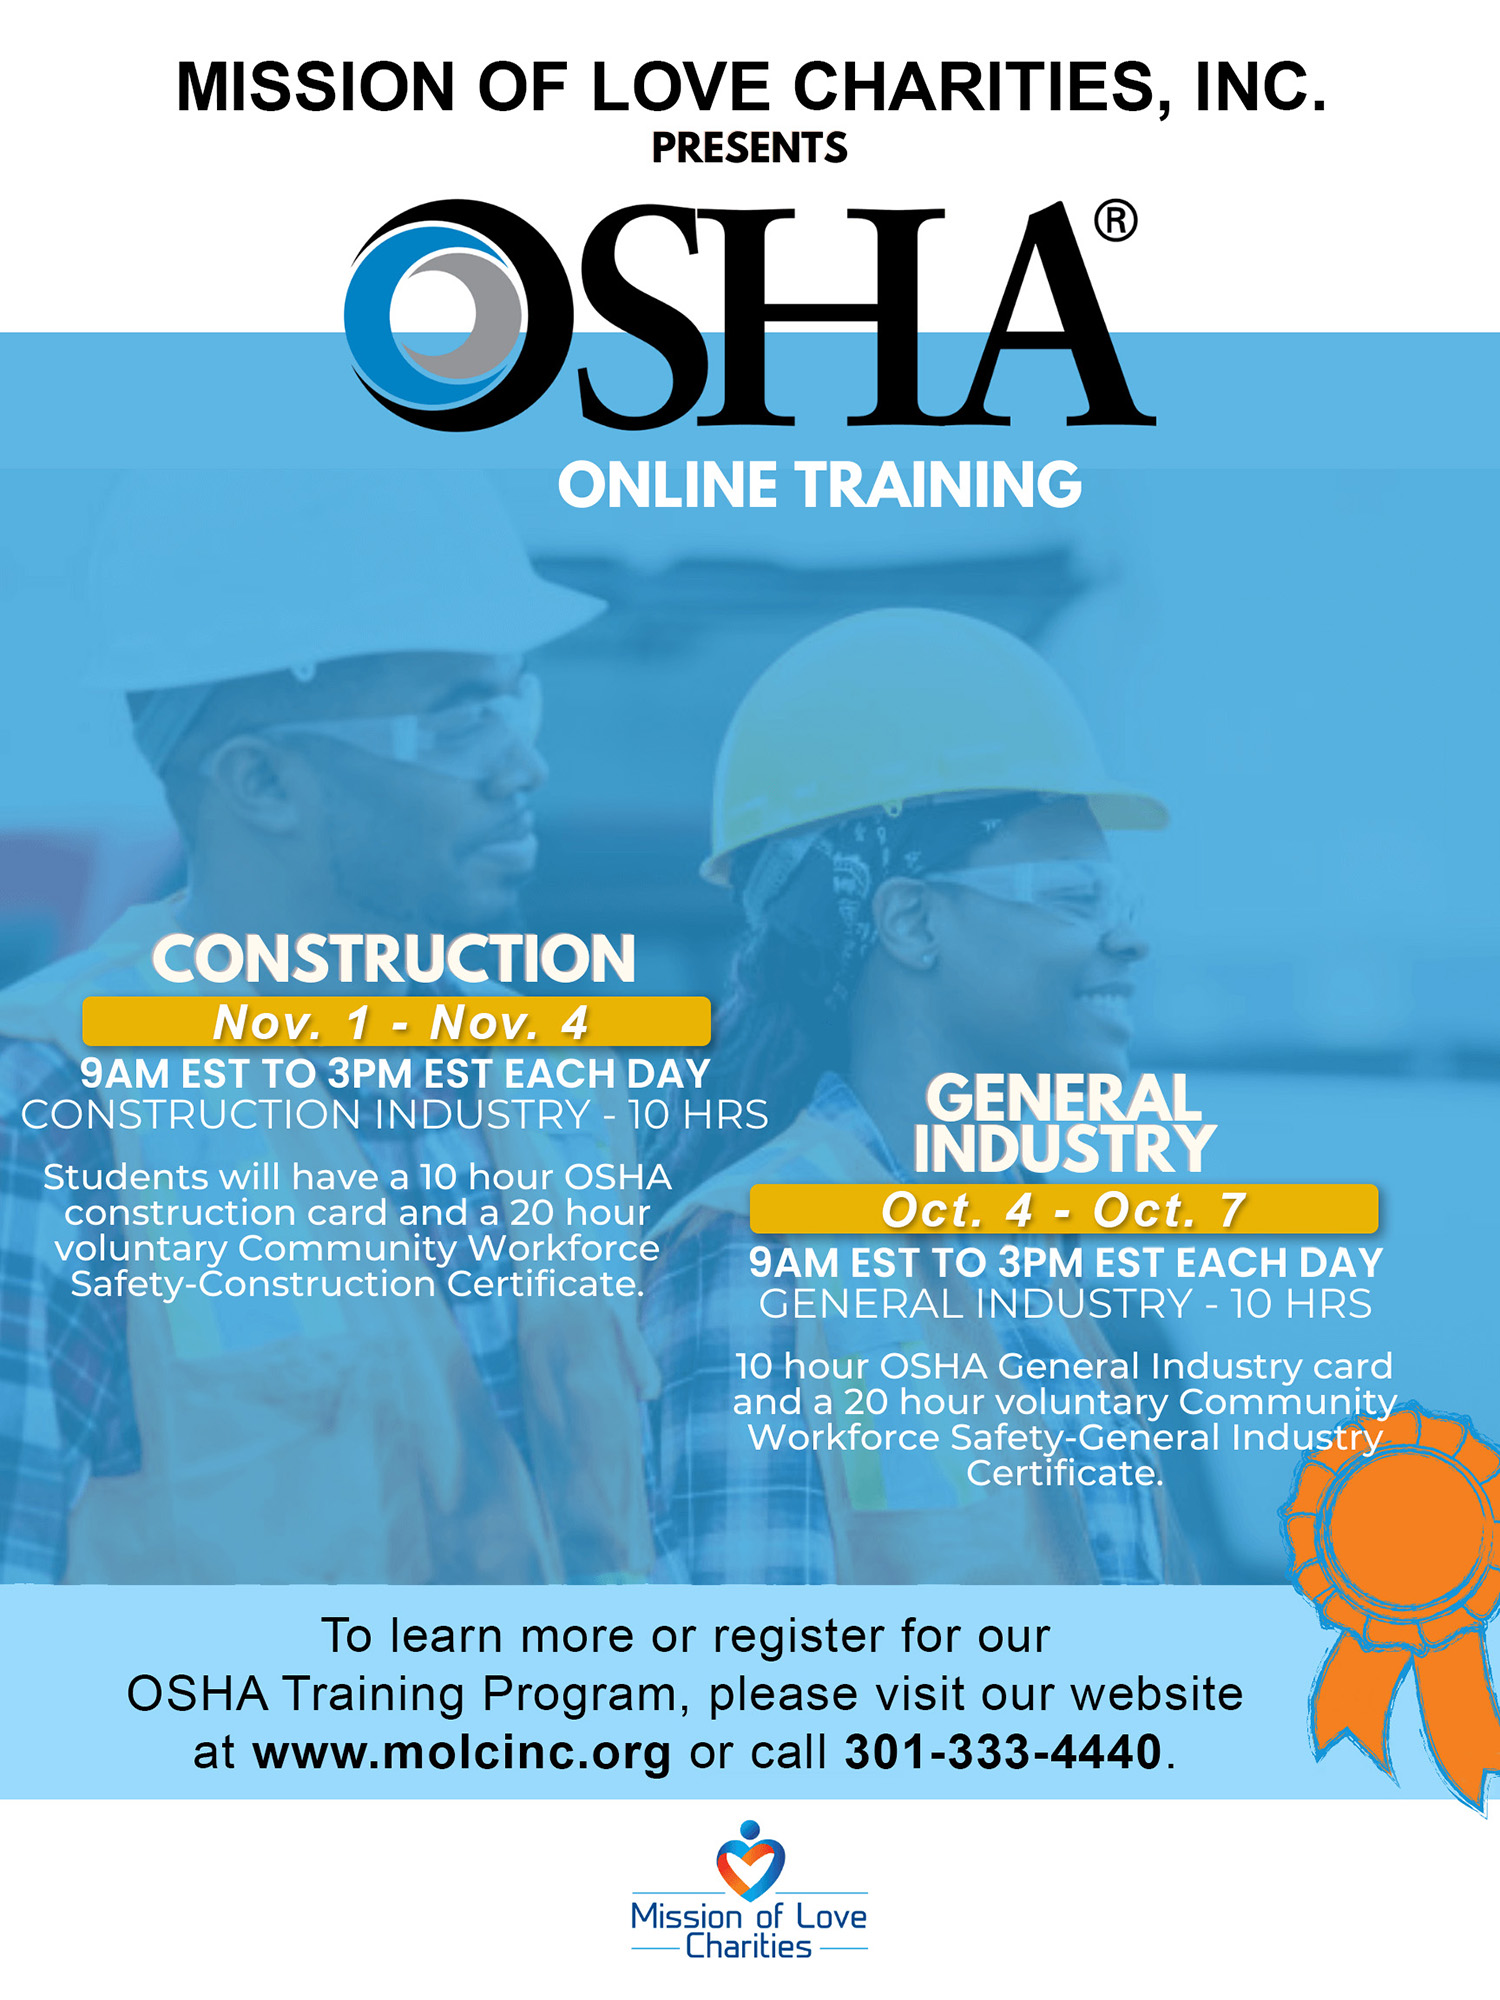 OSHA Online Training